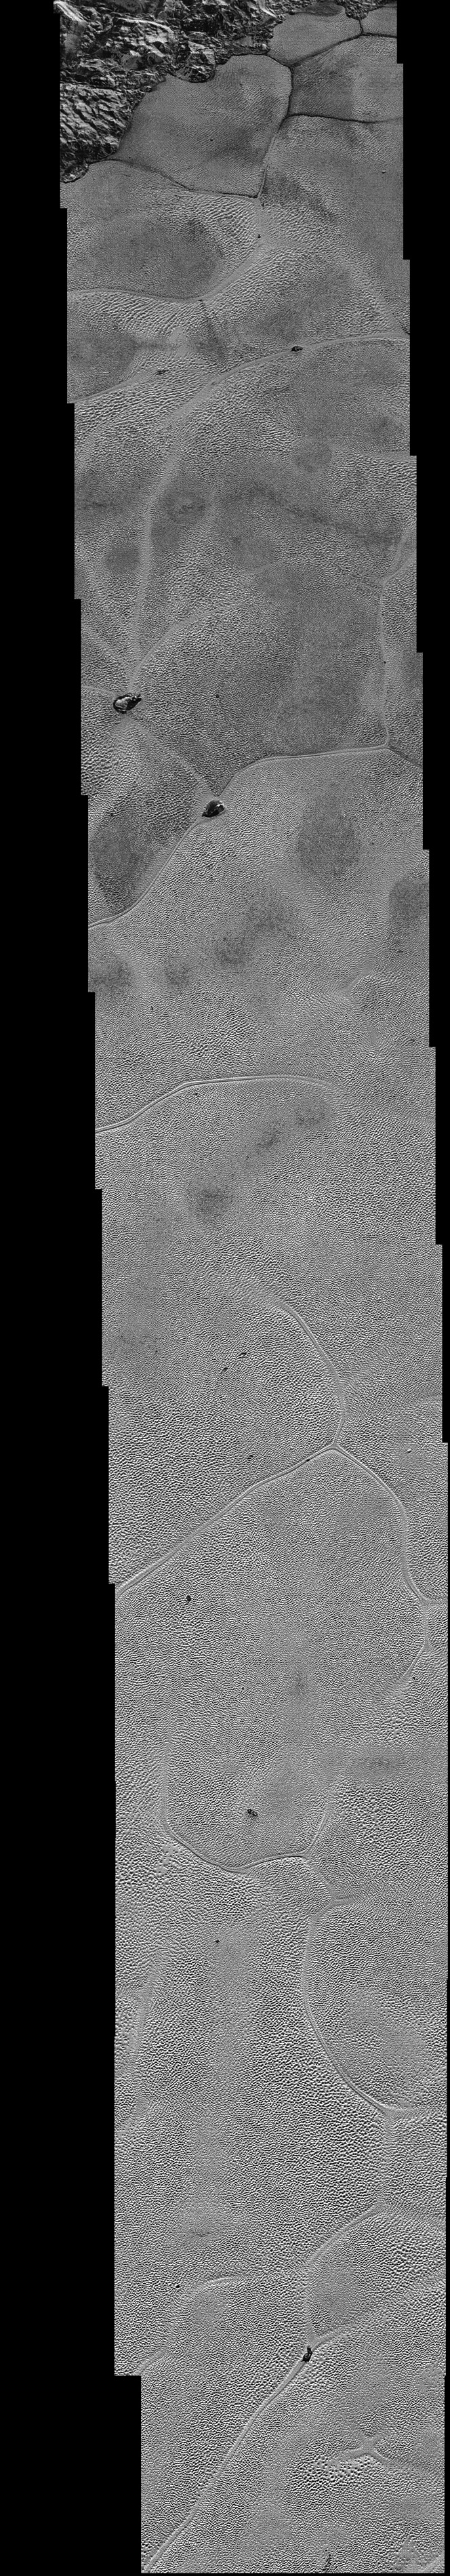 New Horizons передал самые детальные фото Плутона за все время - 2